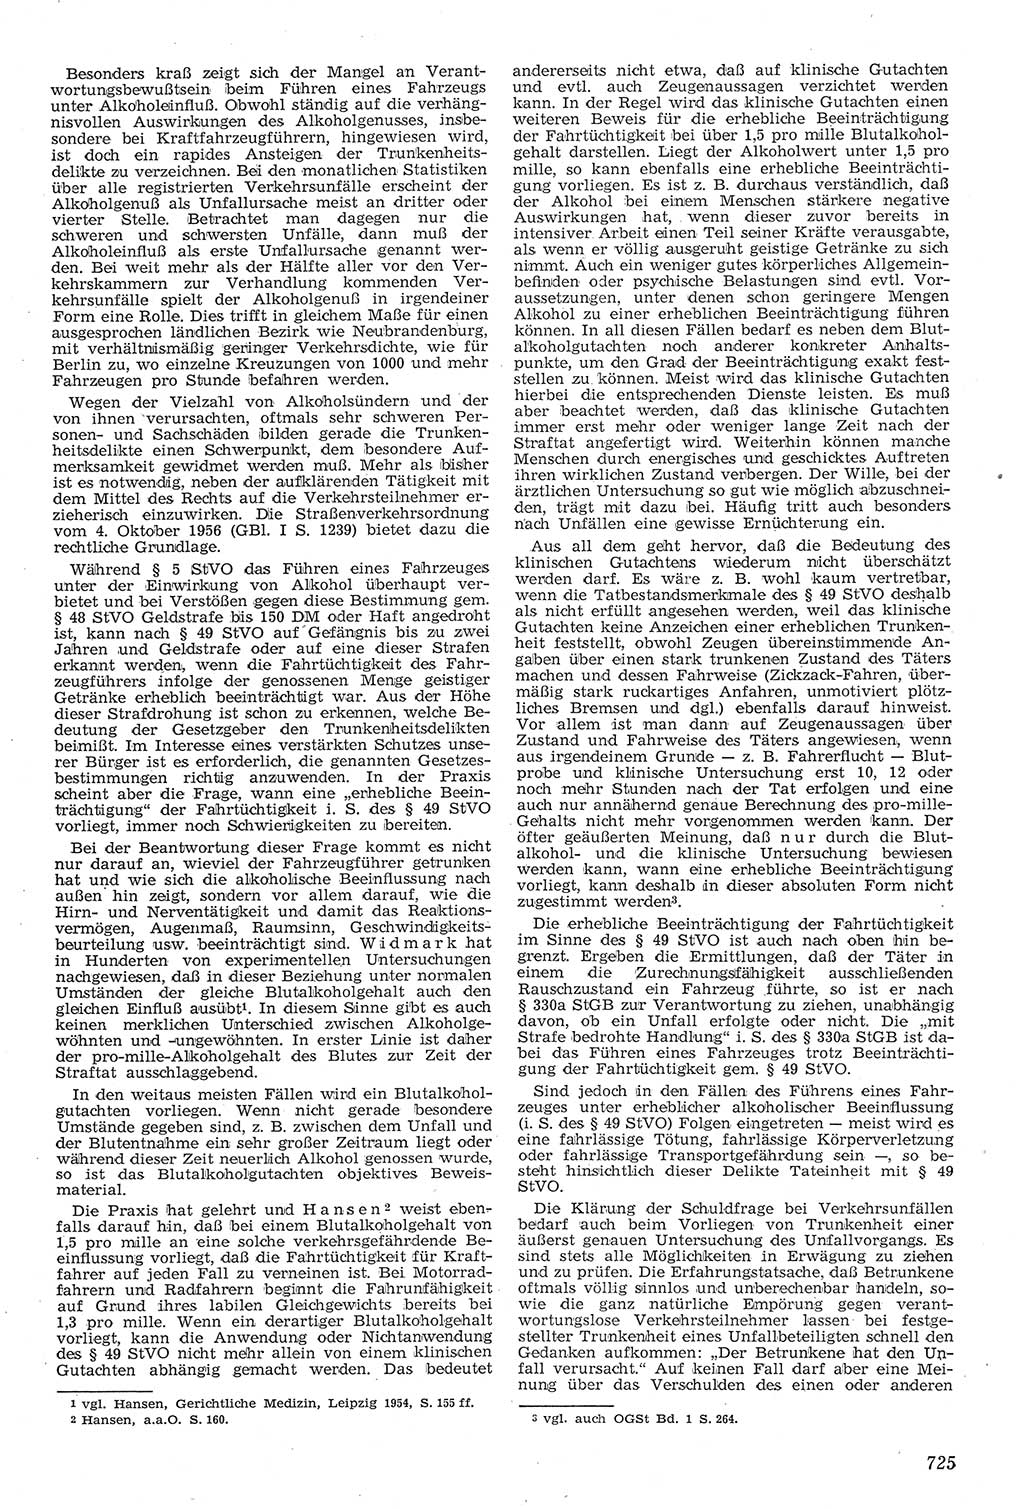 Neue Justiz (NJ), Zeitschrift für Recht und Rechtswissenschaft [Deutsche Demokratische Republik (DDR)], 11. Jahrgang 1957, Seite 725 (NJ DDR 1957, S. 725)